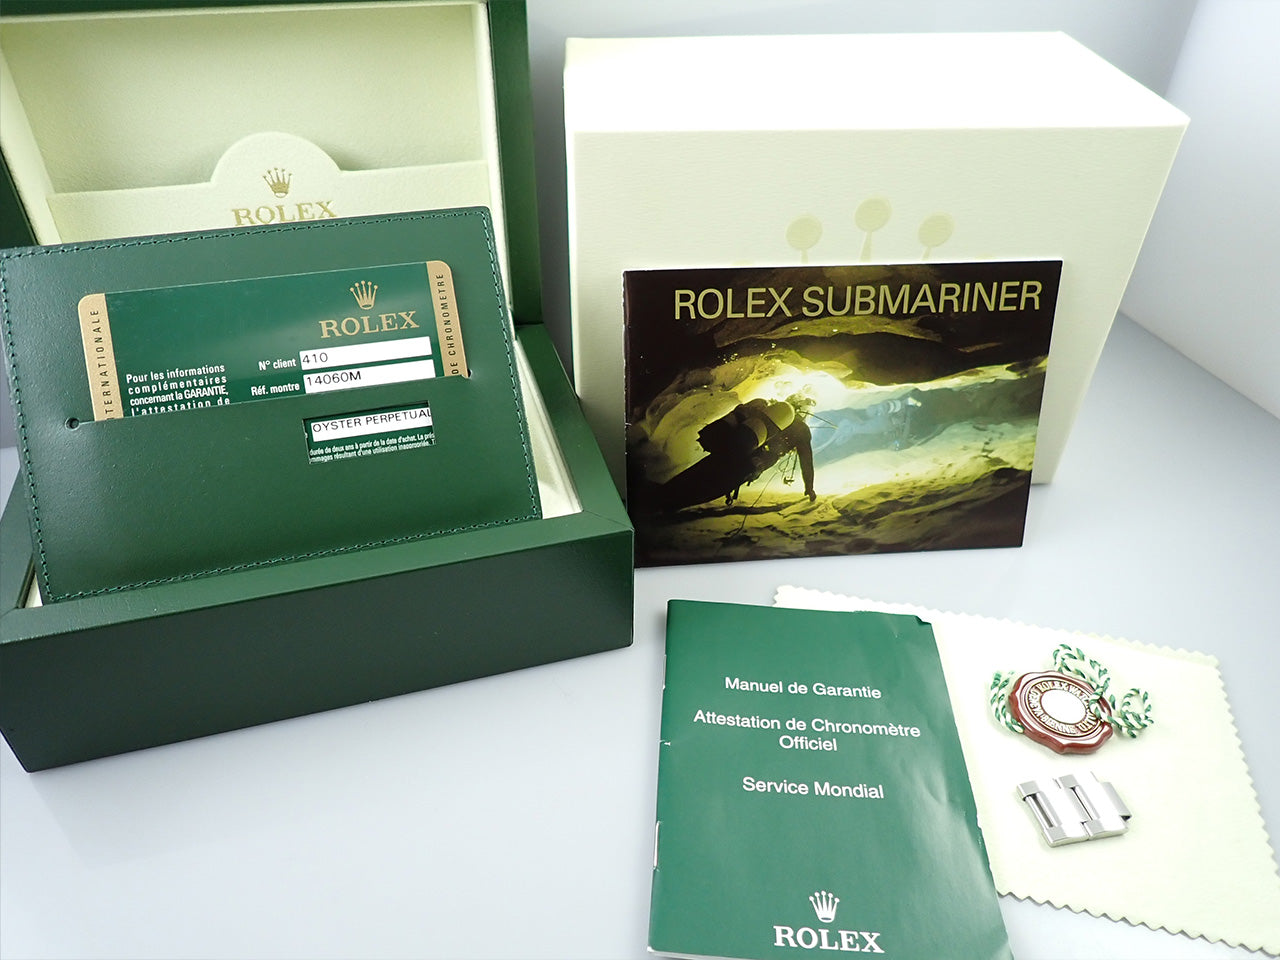 Rolex Submariner No Date &lt;Warranty, Box, etc.&gt;